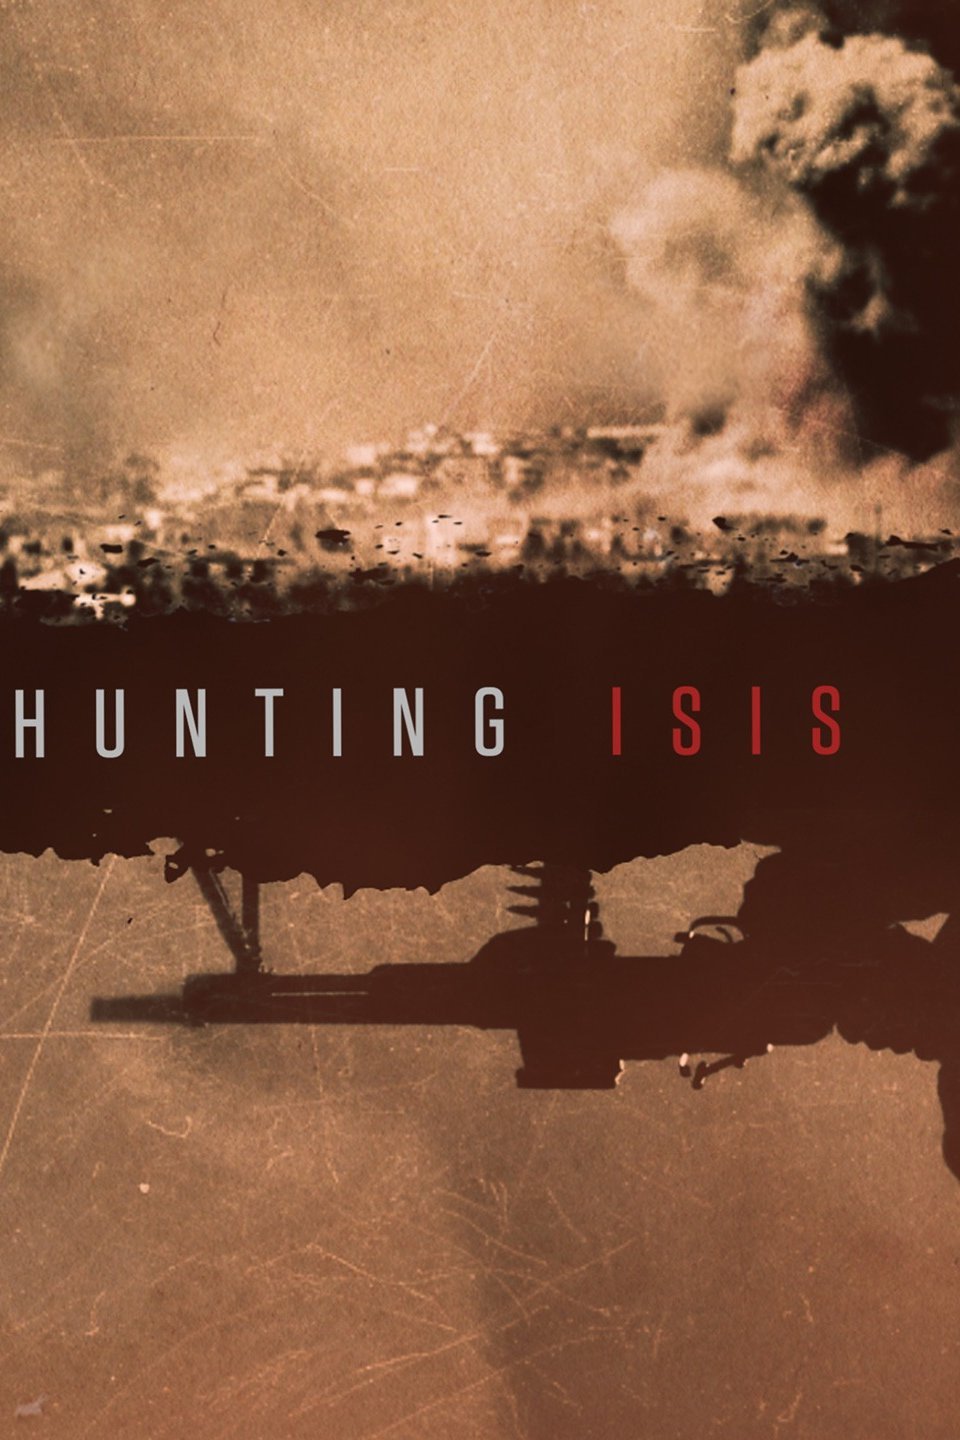 Hunting ISIS 2018: Season 1